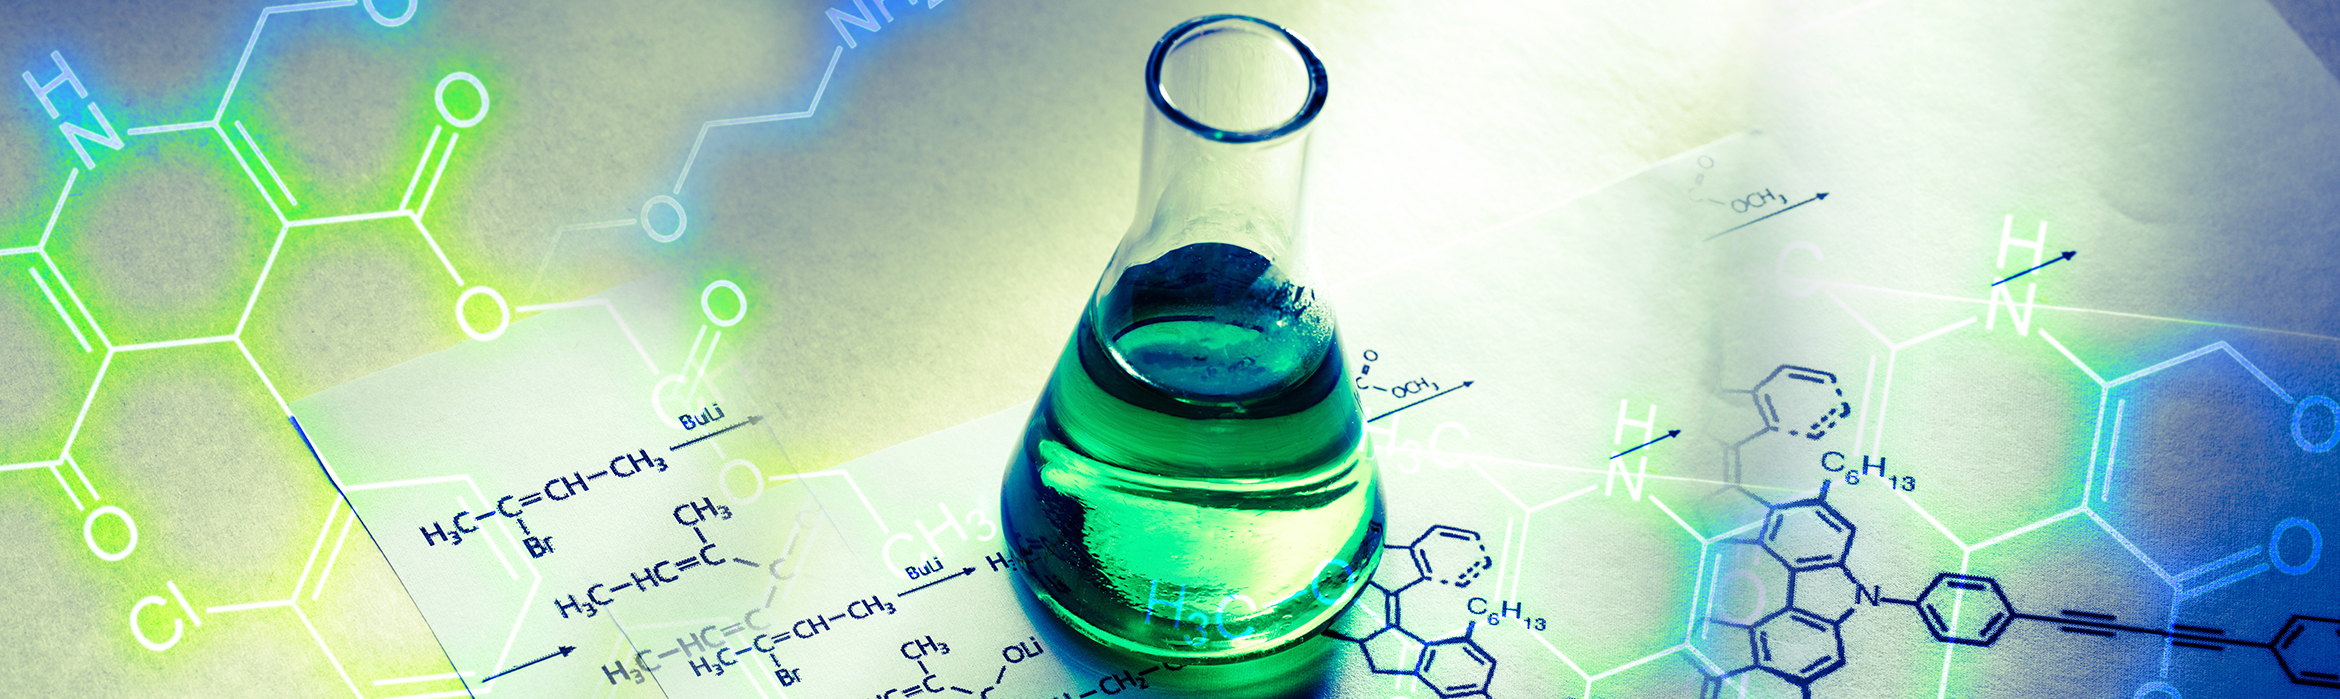 Composición de un tubo químico conteniendo una sustancia líquida verde junto a una fórmula de reacción escrita en papel.